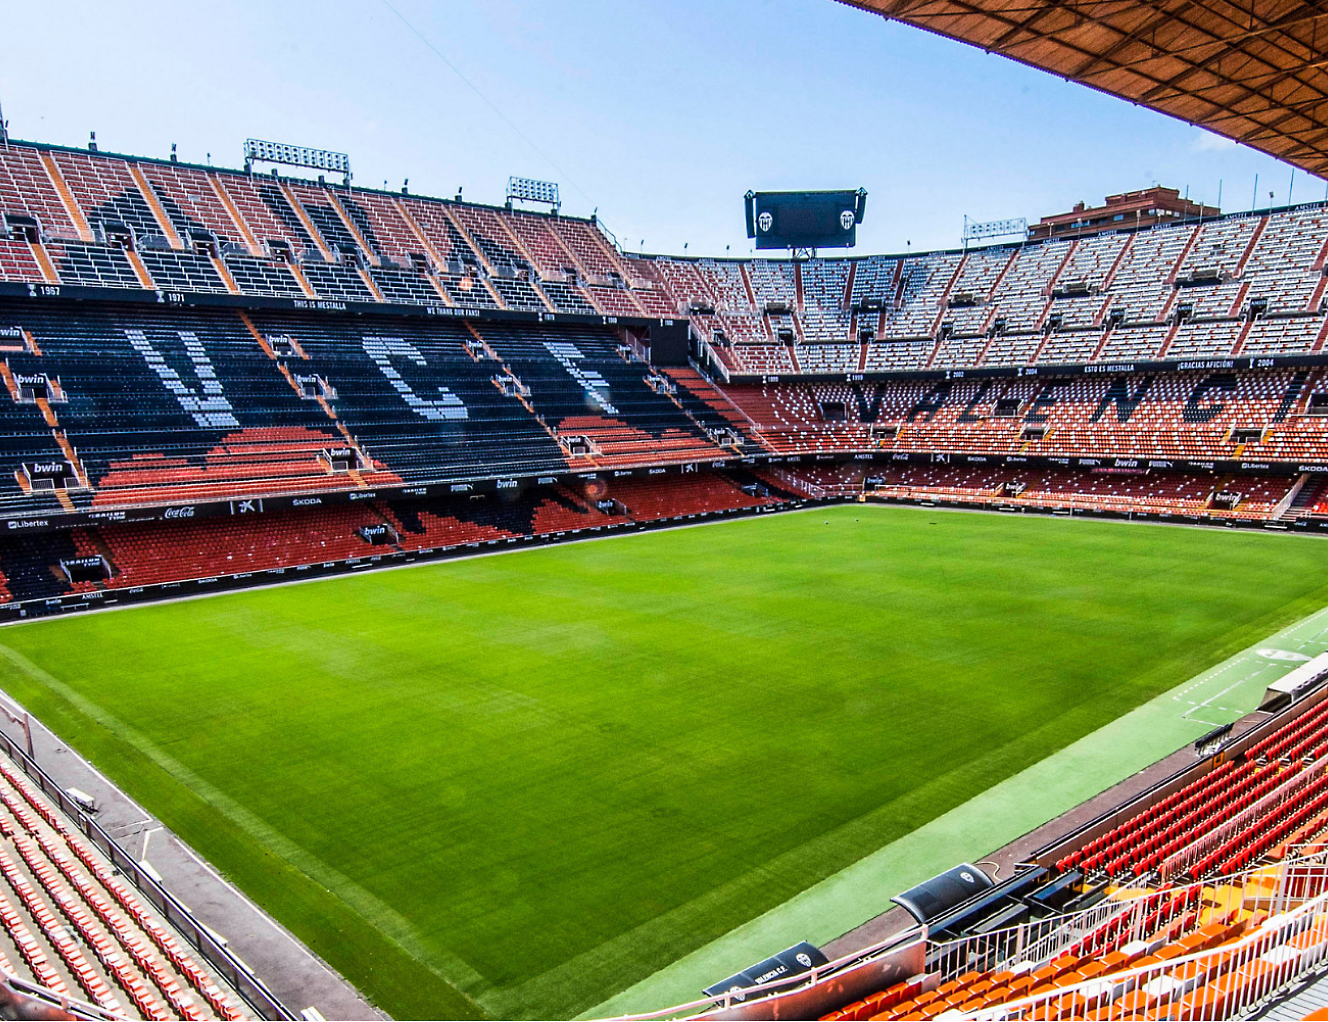 El interior de un estadio de fútbol con un campo naranja.